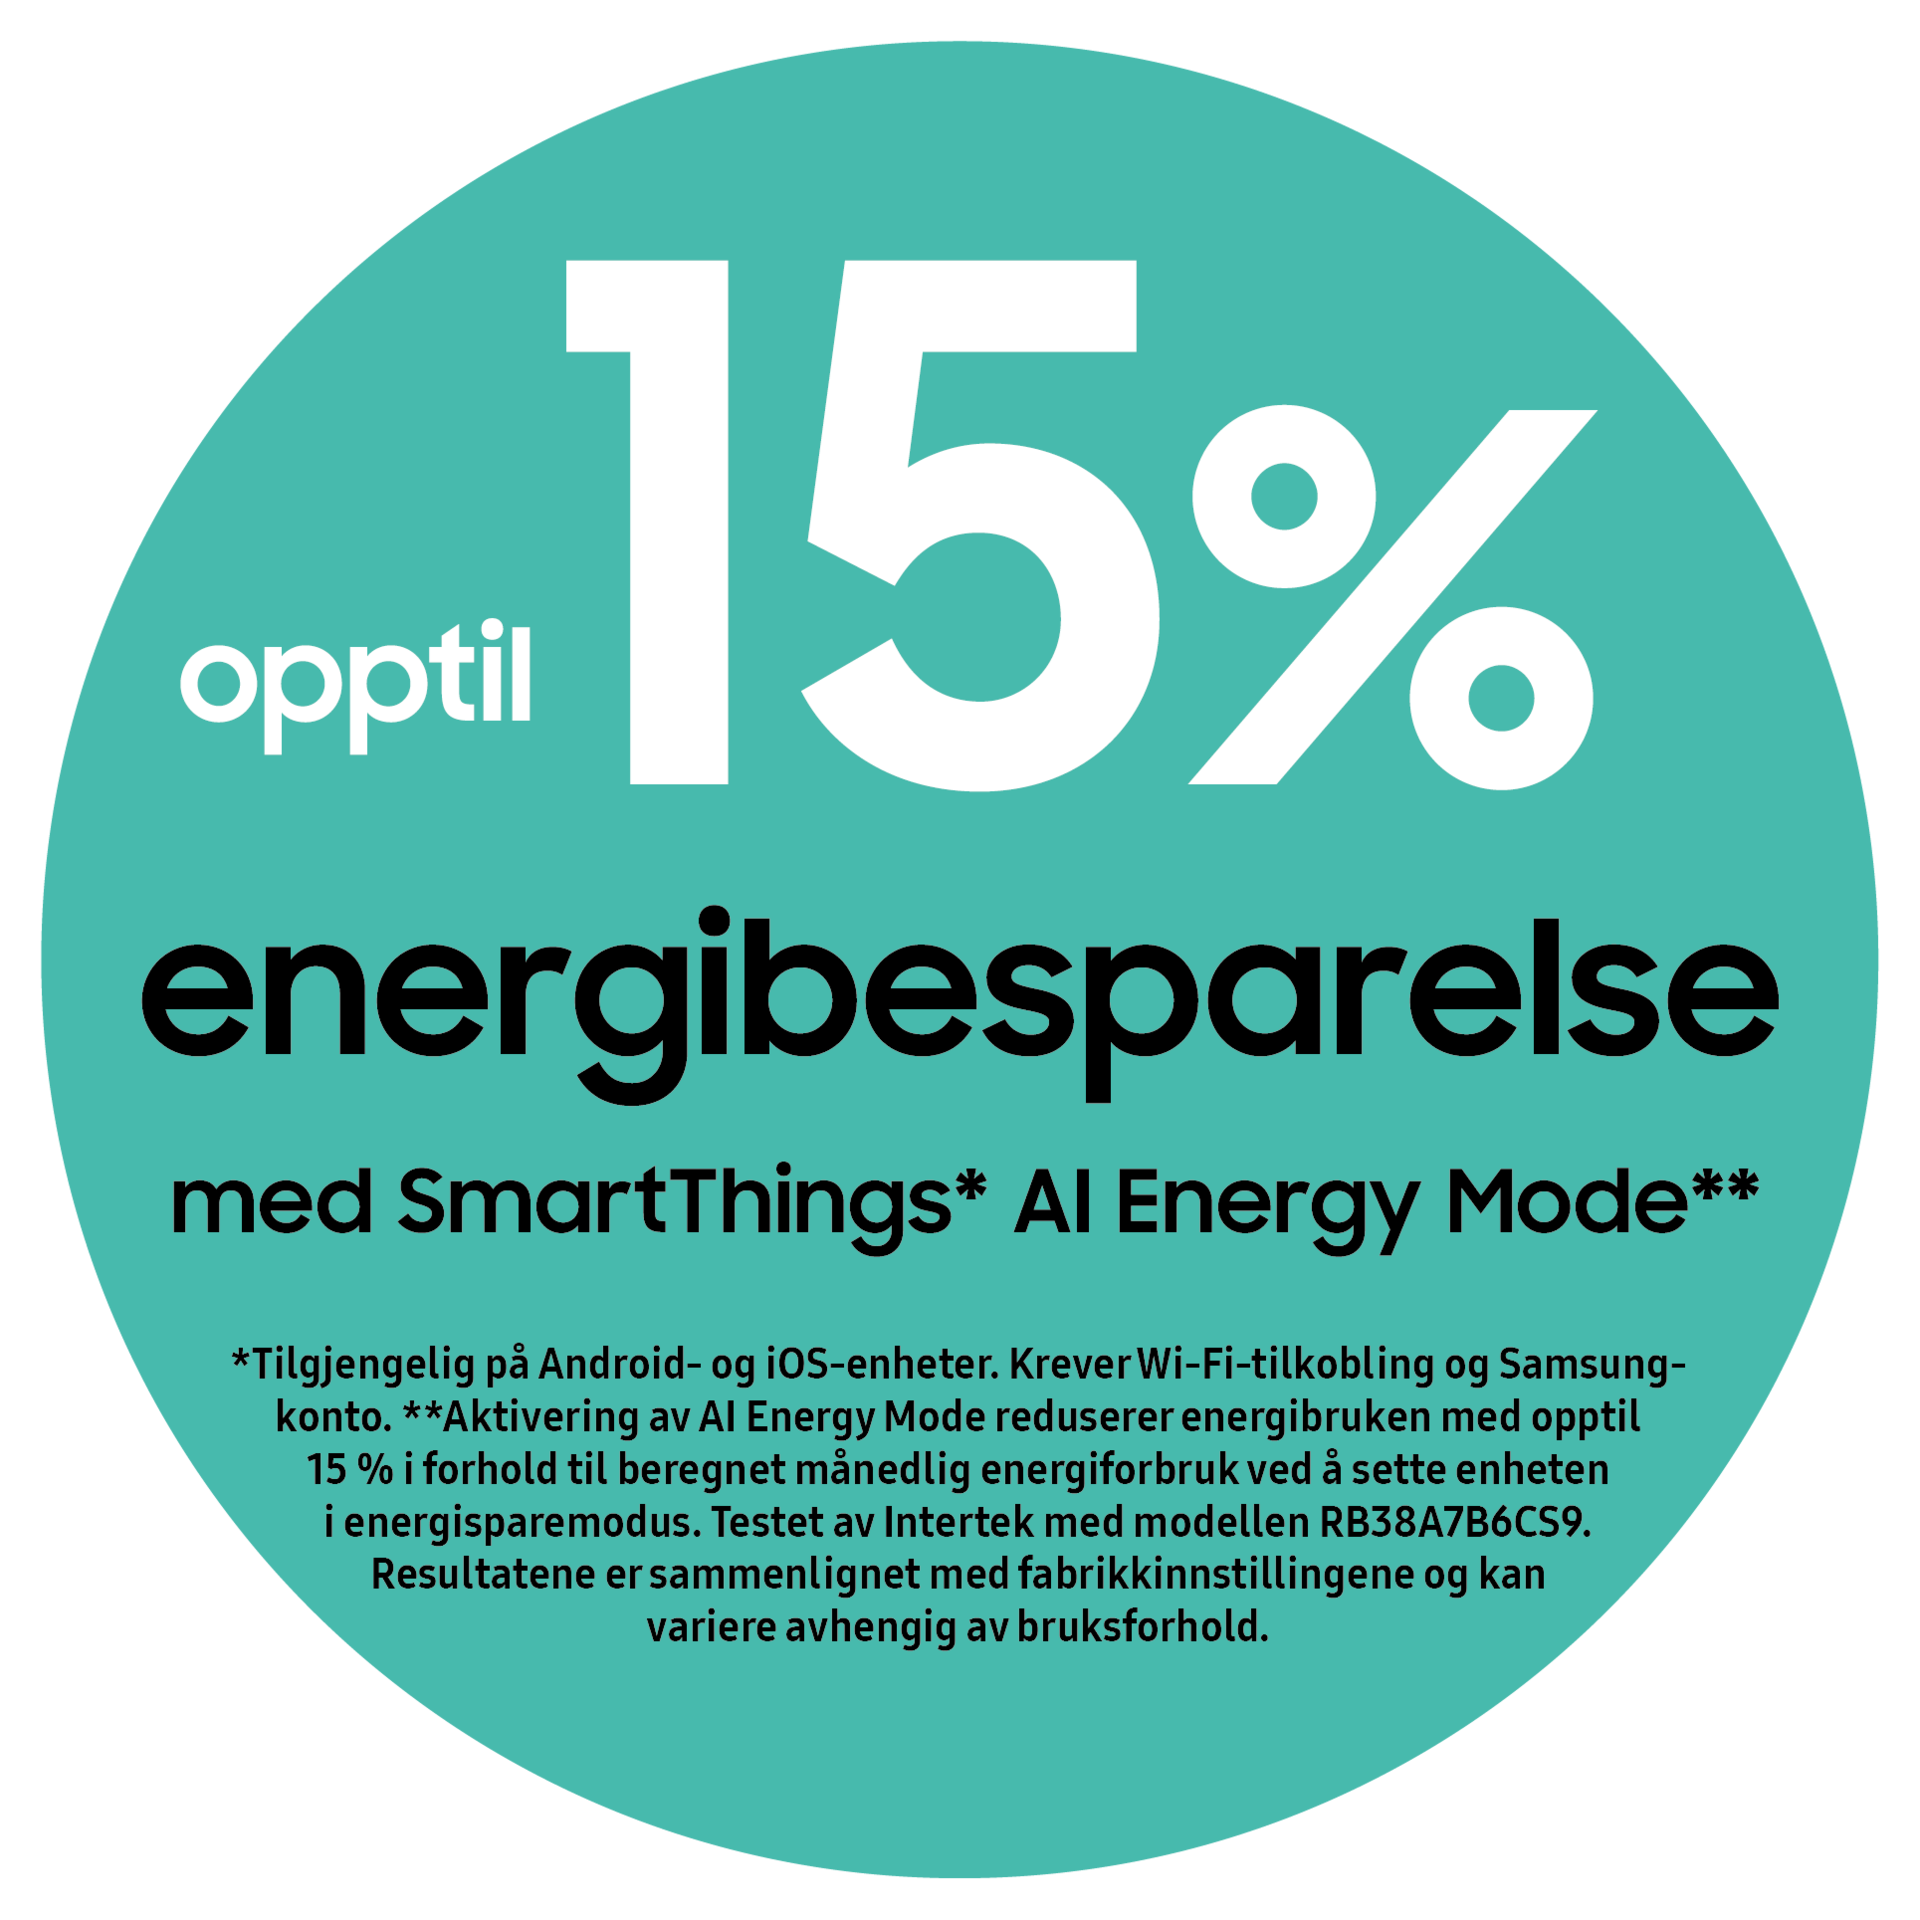 Opptil 15% energibesparelse med SmartThings AI Energy Mode